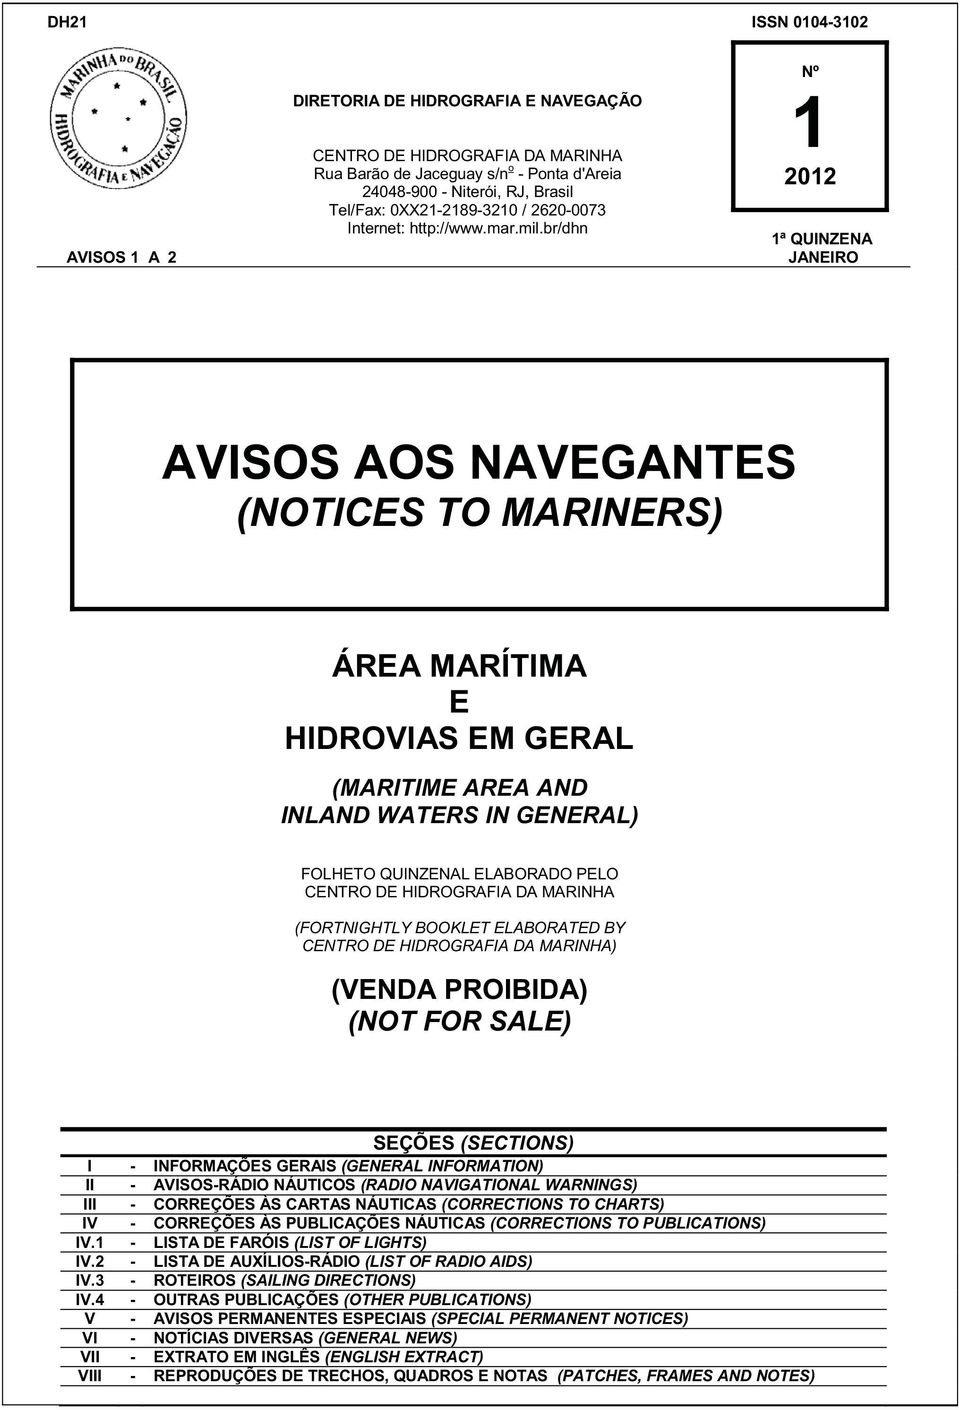 br/dhn Nº 1 2012 1ª QUINZENA JANEIRO AVISOS AOS NAVEGANTES (NOTICES TO MARINERS) ÁREA MARÍTIMA E HIDROVIAS EM GERAL (MARITIME AREA AND INLAND WATERS IN GENERAL) FOLHETO QUINZENAL ELABORADO PELO